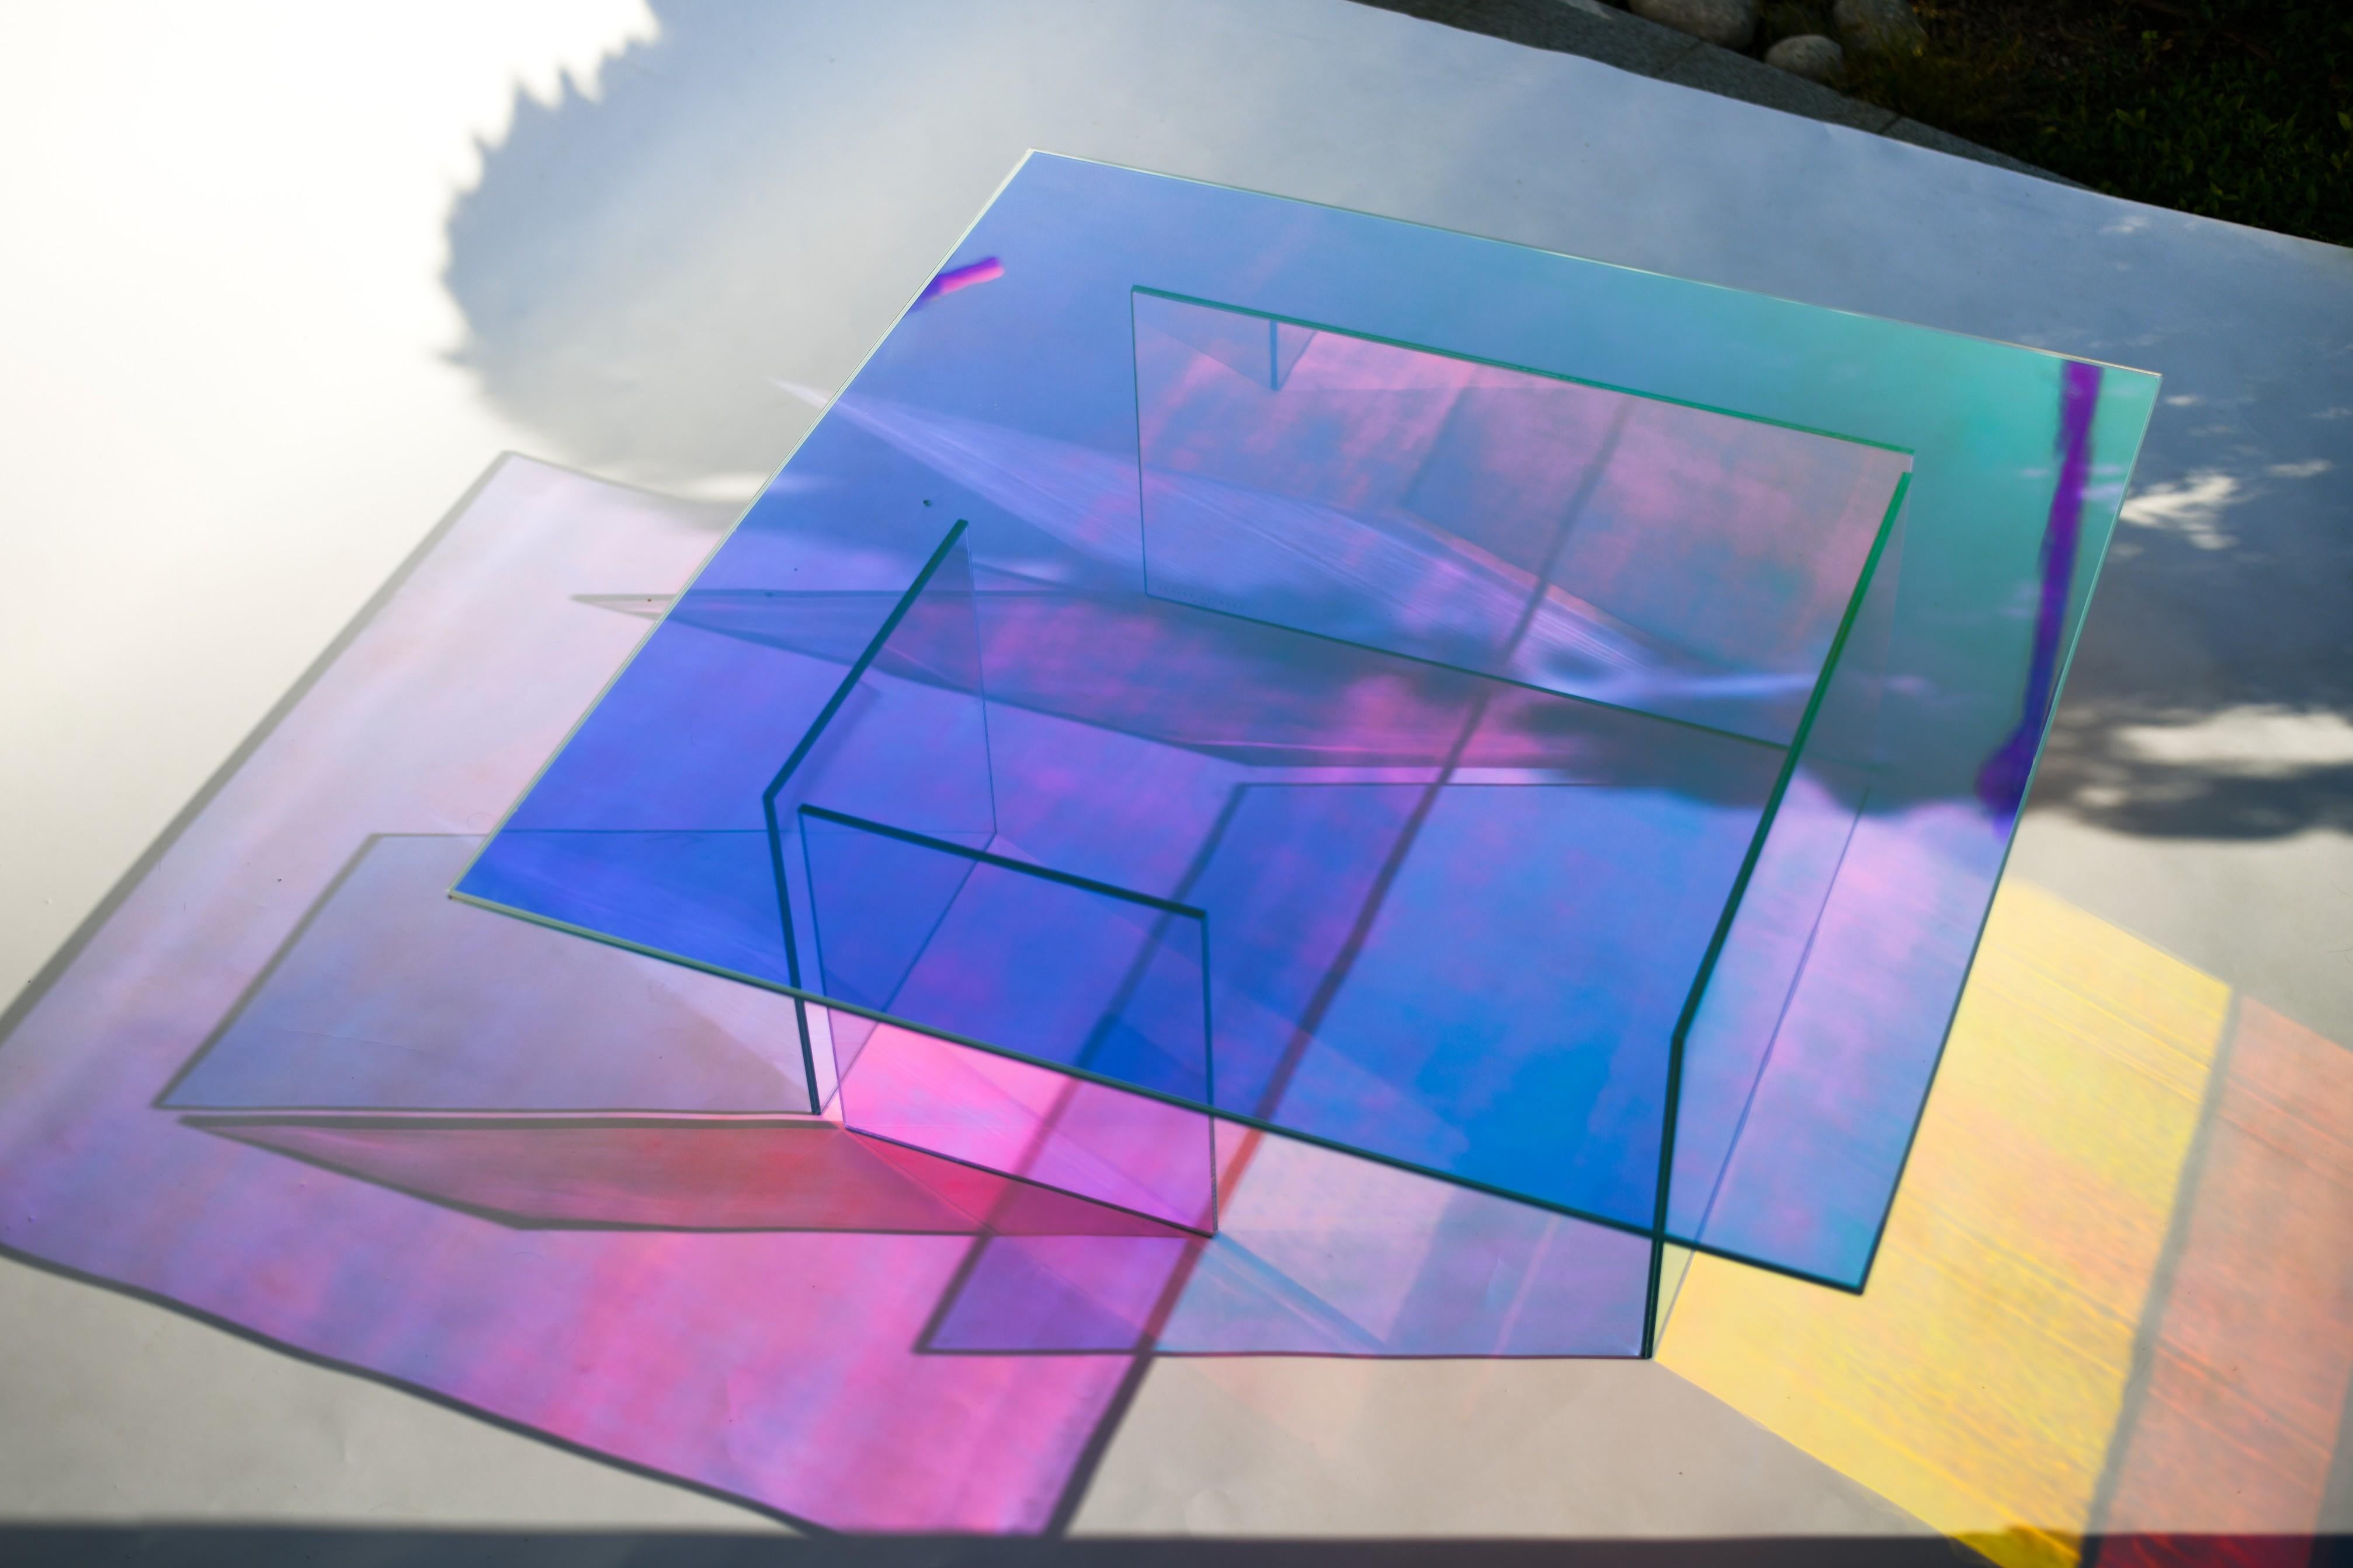 Kinetische farben glas tisch von Brajak Vitberg
MATERIALIEN: Glas, dichroitische Folie
Abmessungen: 120 x 120 x 40 cm

Bijelic und Brajak sind zwei Architekten aus Ljubljana, Slowenien.
Sie sind bestrebt, handwerkliche Elemente zu entwerfen und